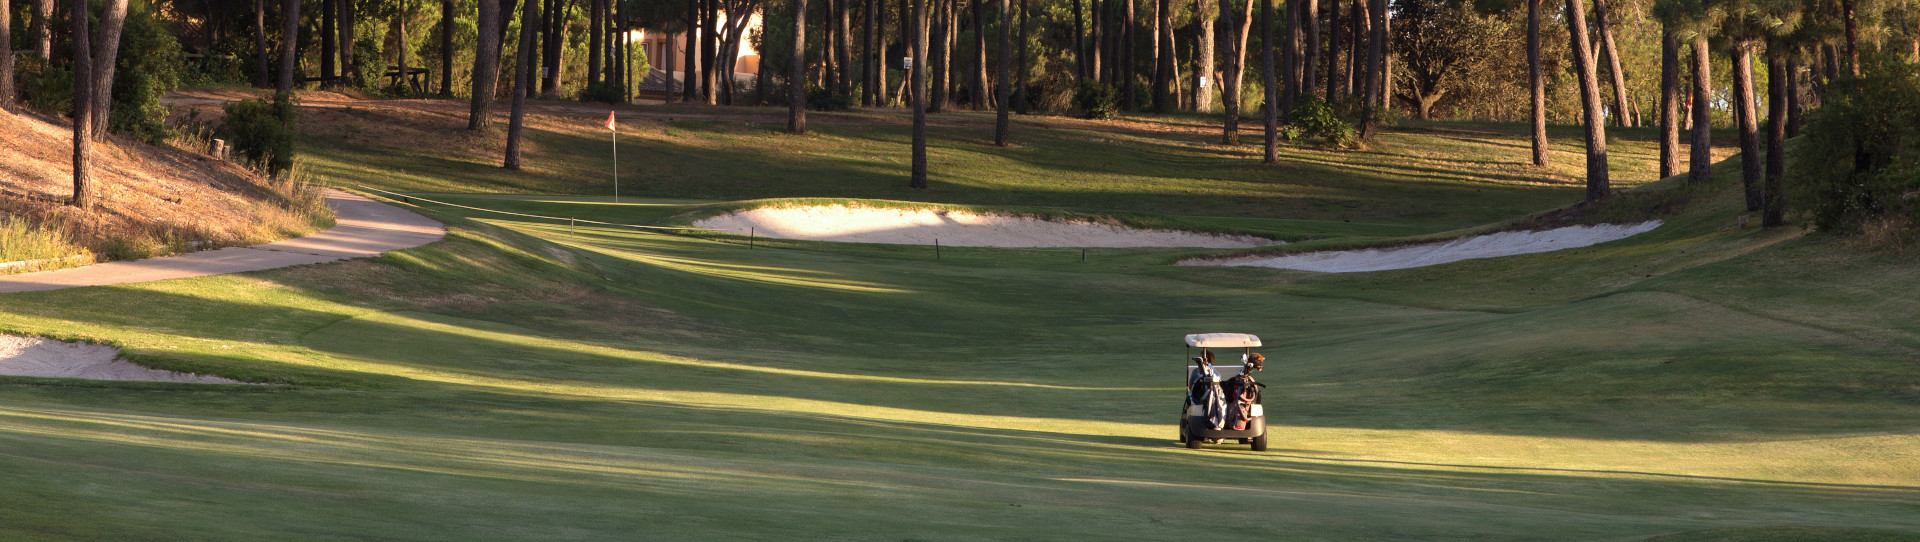 Spain golf courses - Islantilla Golf Course - Photo 2